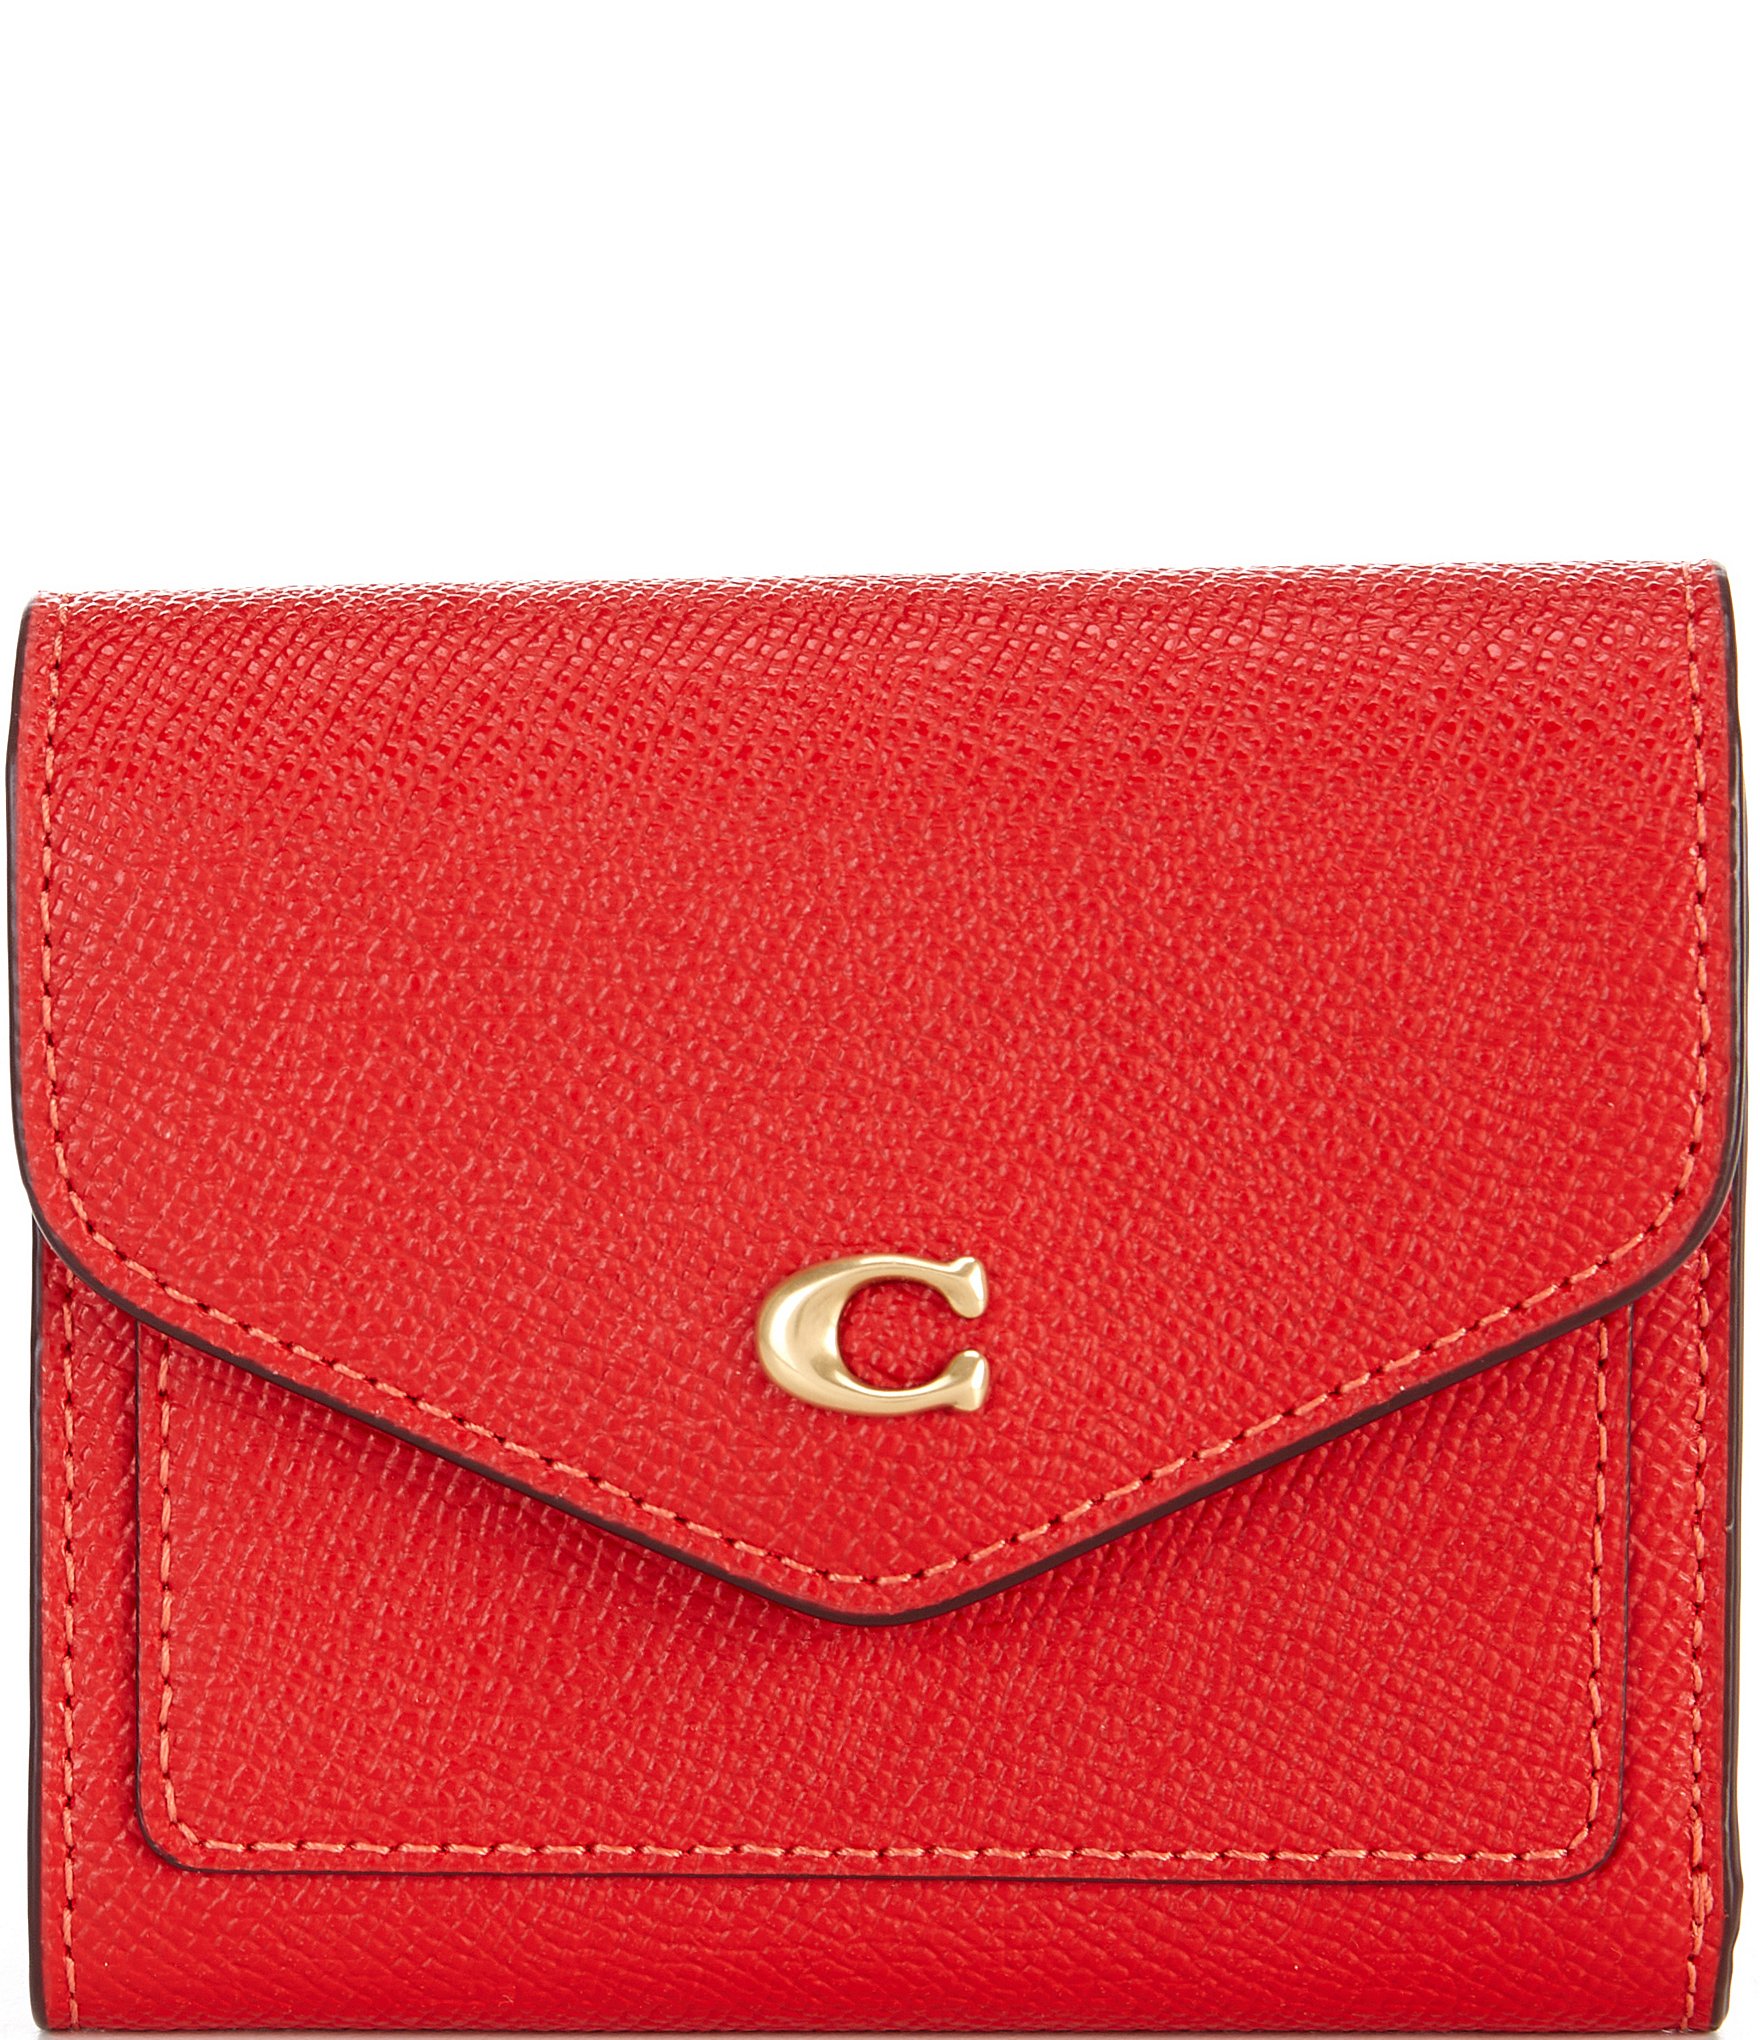 Coach Women's Wallet - Red